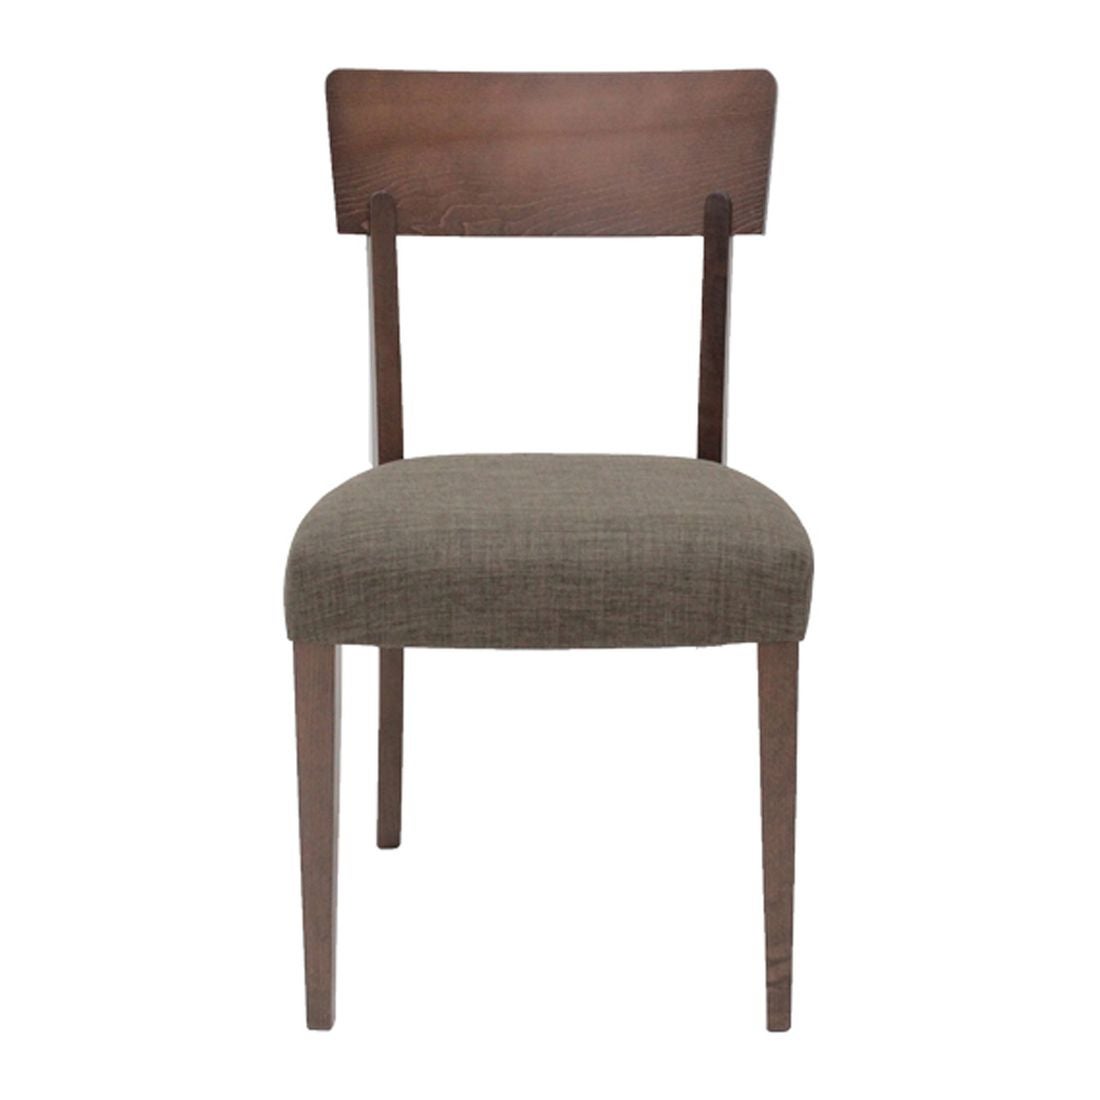 เก้าอี้ทานอาหาร เก้าอี้ไม้เบาะผ้า รุ่น Enland สีสีลายไม้ธรรมชาติ-SB Design Square